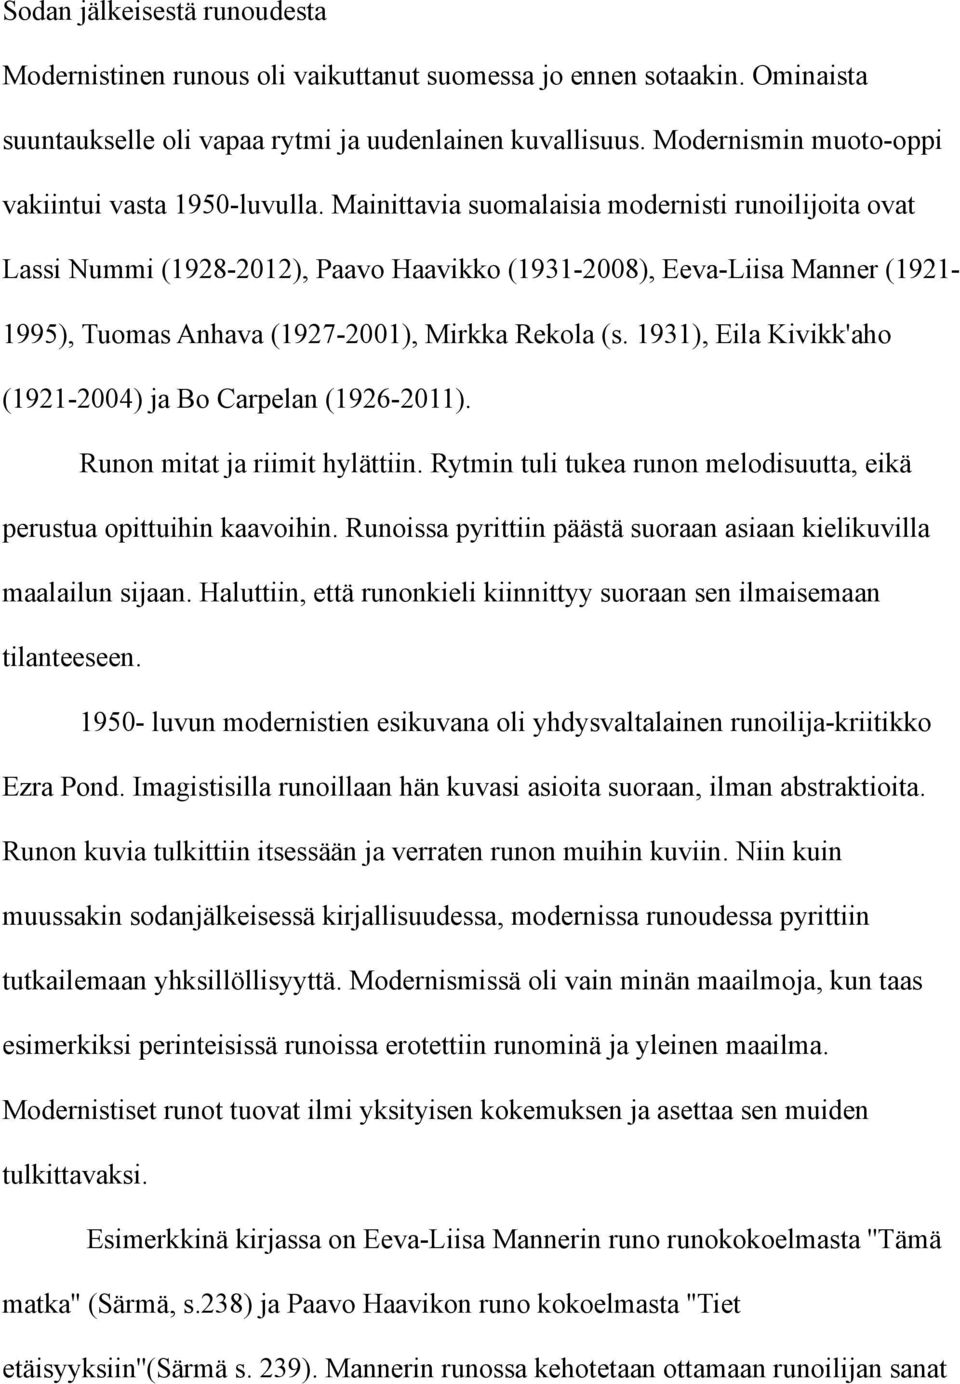 Mainittavia suomalaisia modernisti runoilijoita ovat Lassi Nummi (1928-2012), Paavo Haavikko (1931-2008), Eeva-Liisa Manner (1921-1995), Tuomas Anhava (1927-2001), Mirkka Rekola (s.